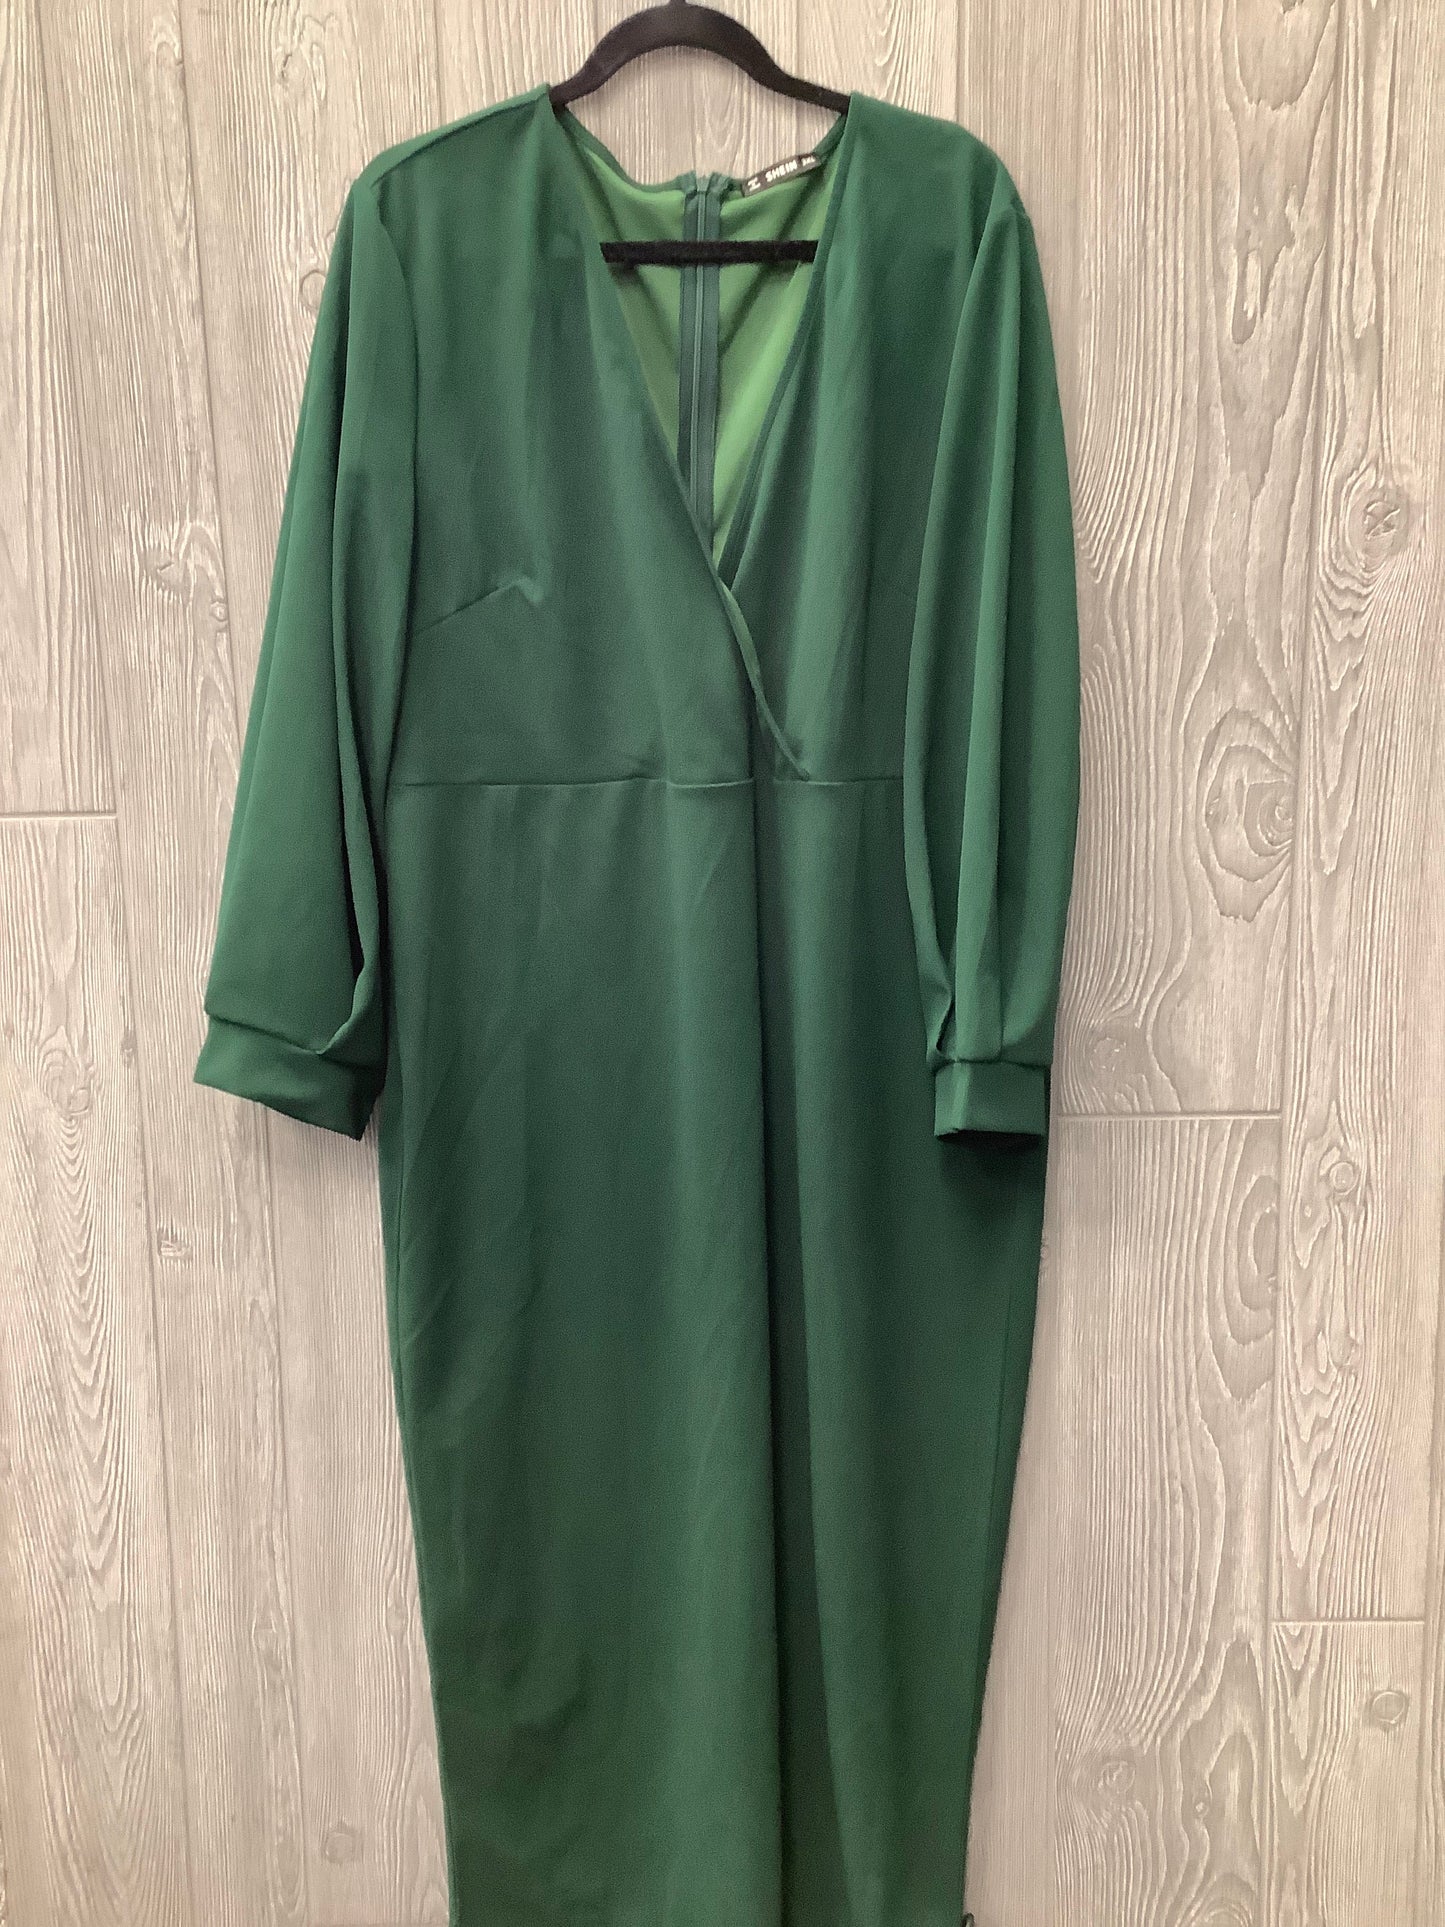 Green Dress Casual Maxi Shein, Size 3x